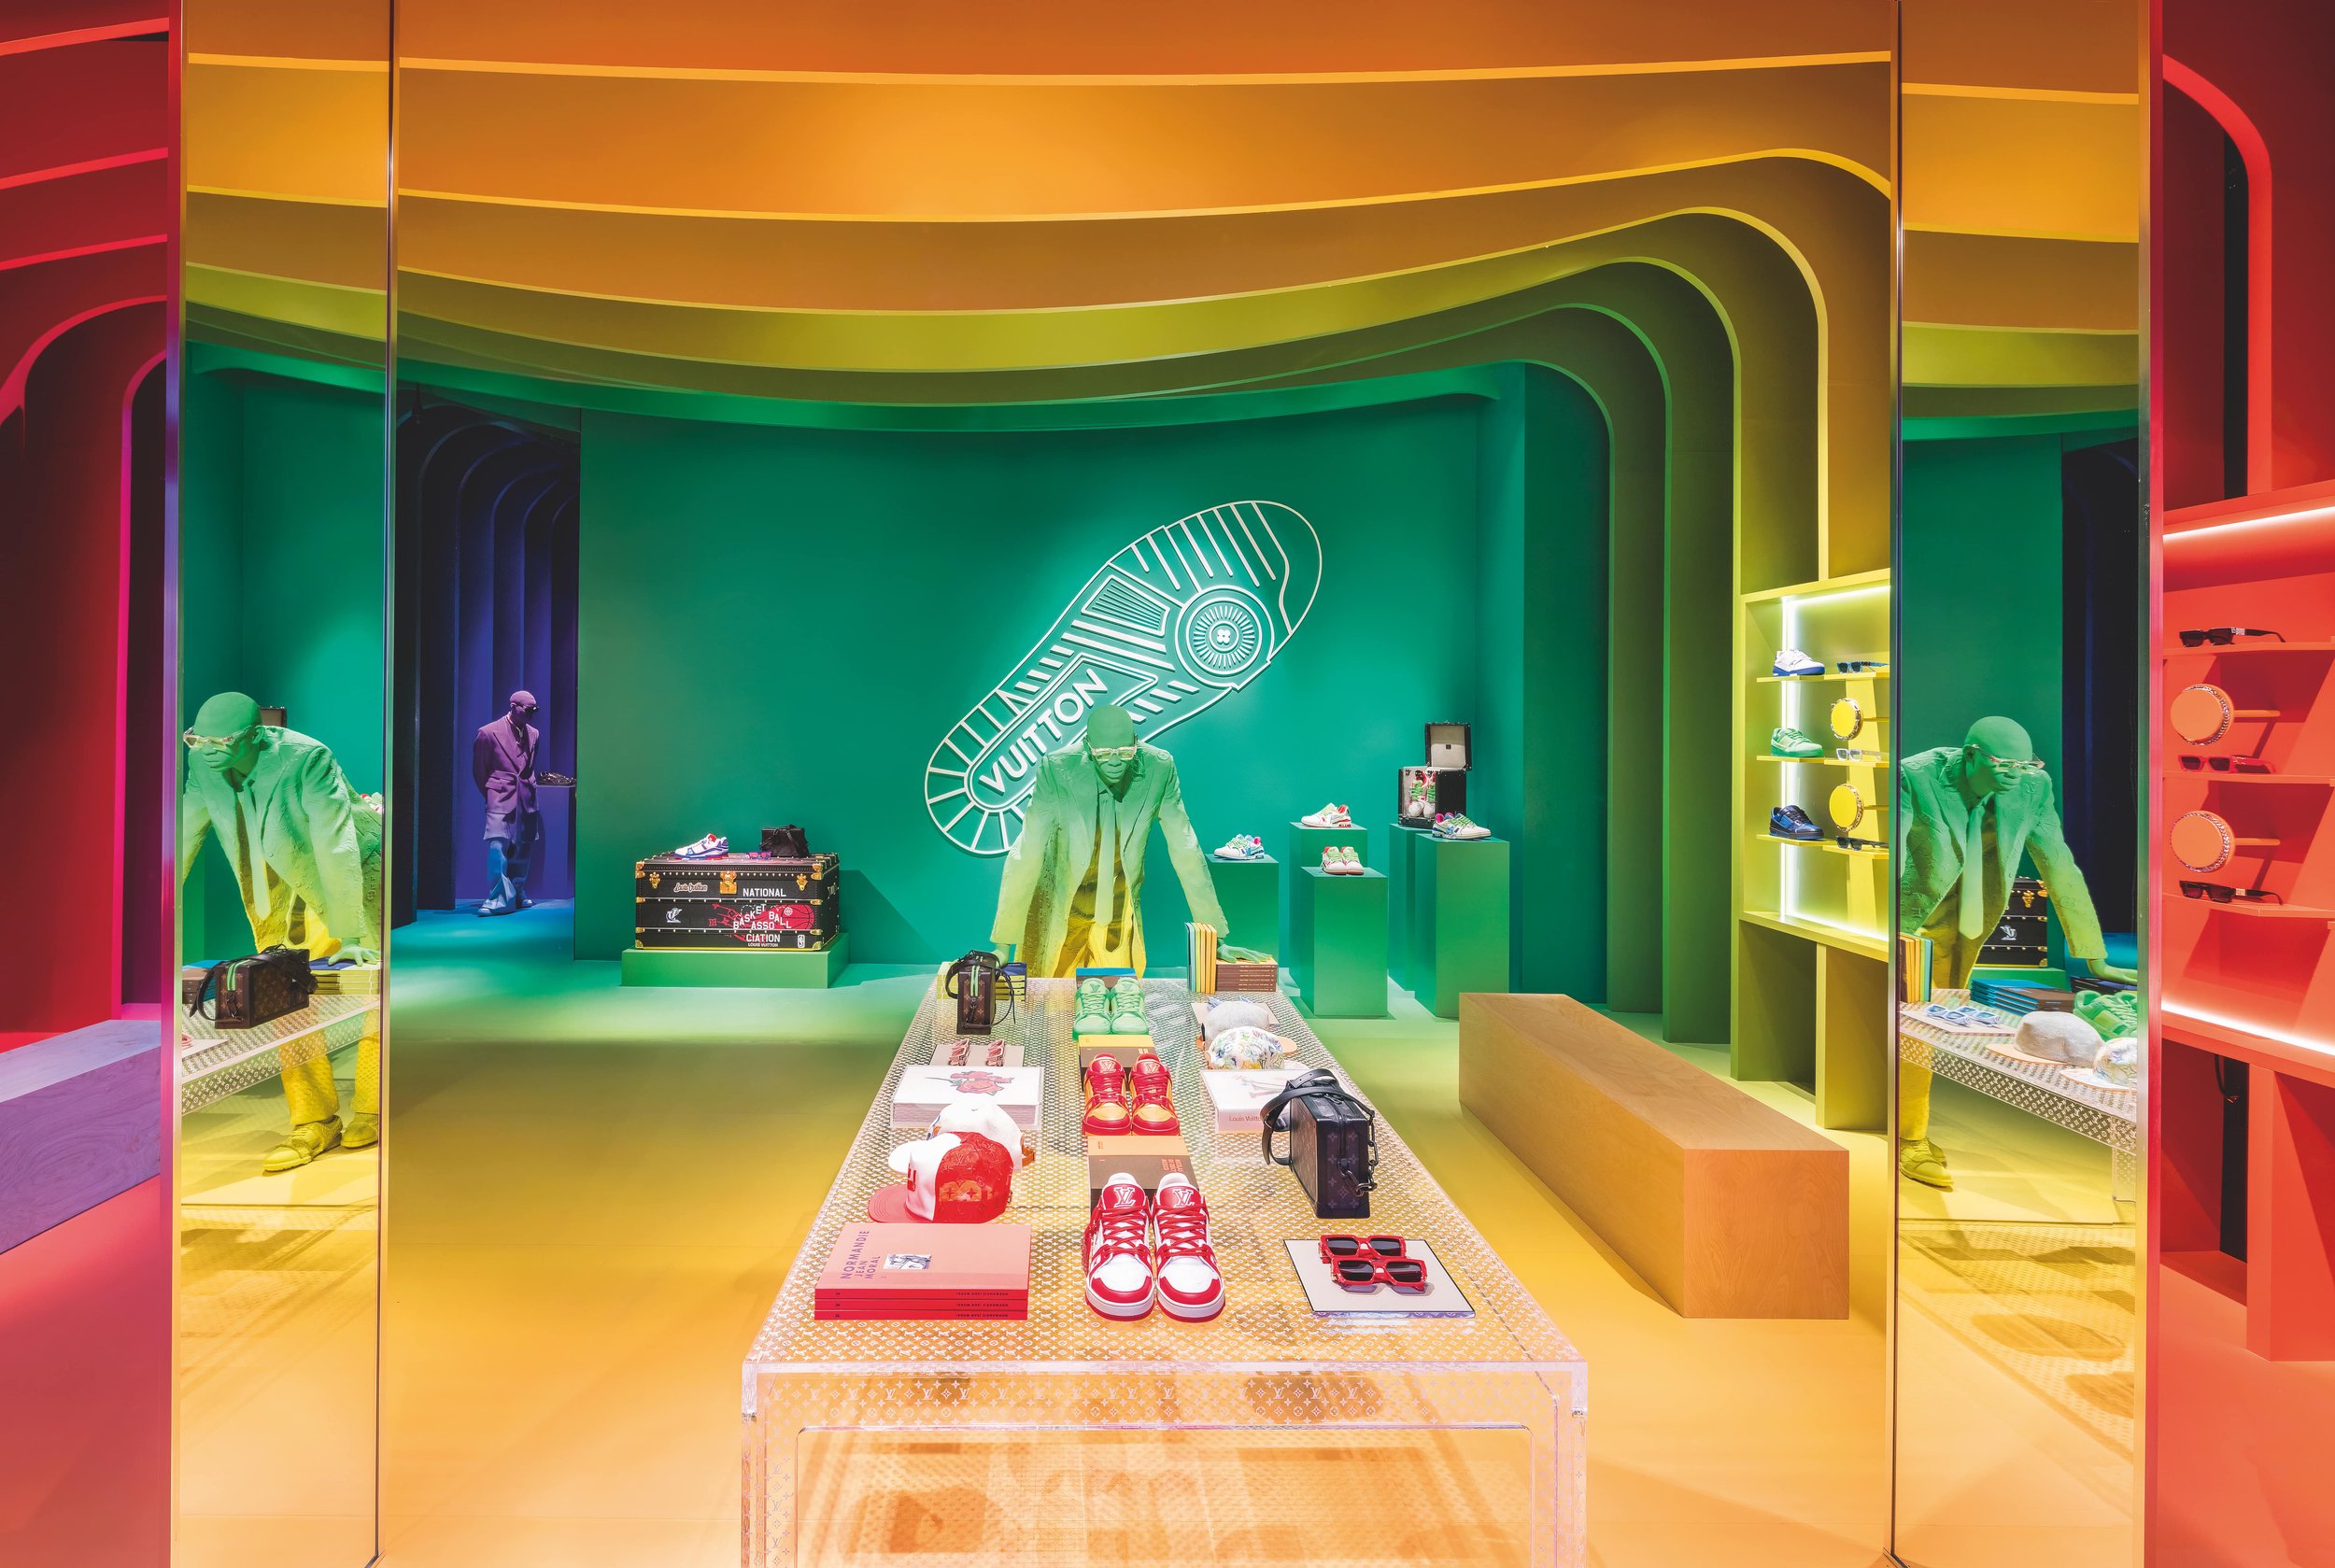 Shop Assouline Louis Vuitton: Virgil Abloh